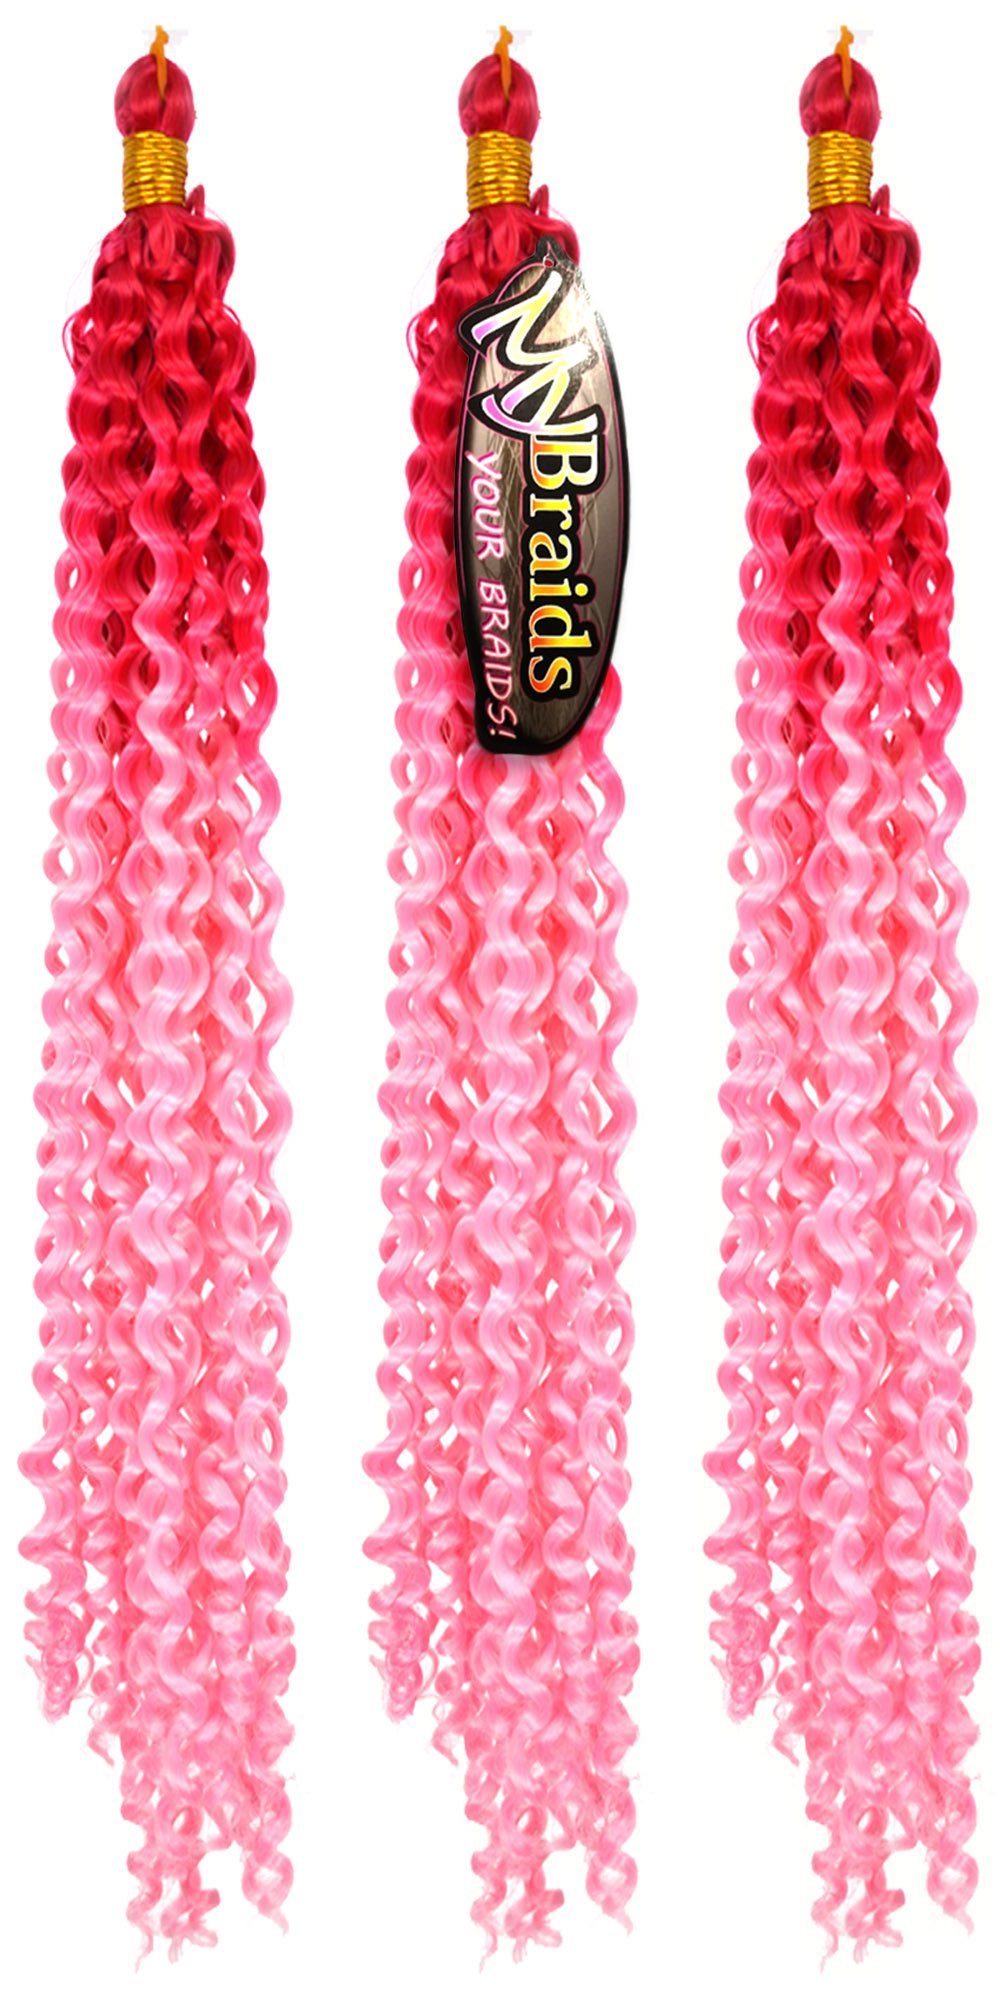 3er Deep Kunsthaar-Extension Pack Ombre Wave Wellig 17-WS Dunkles Braids Flechthaar Zöpfe YOUR Pink-Hellrosa MyBraids Crochet BRAIDS!